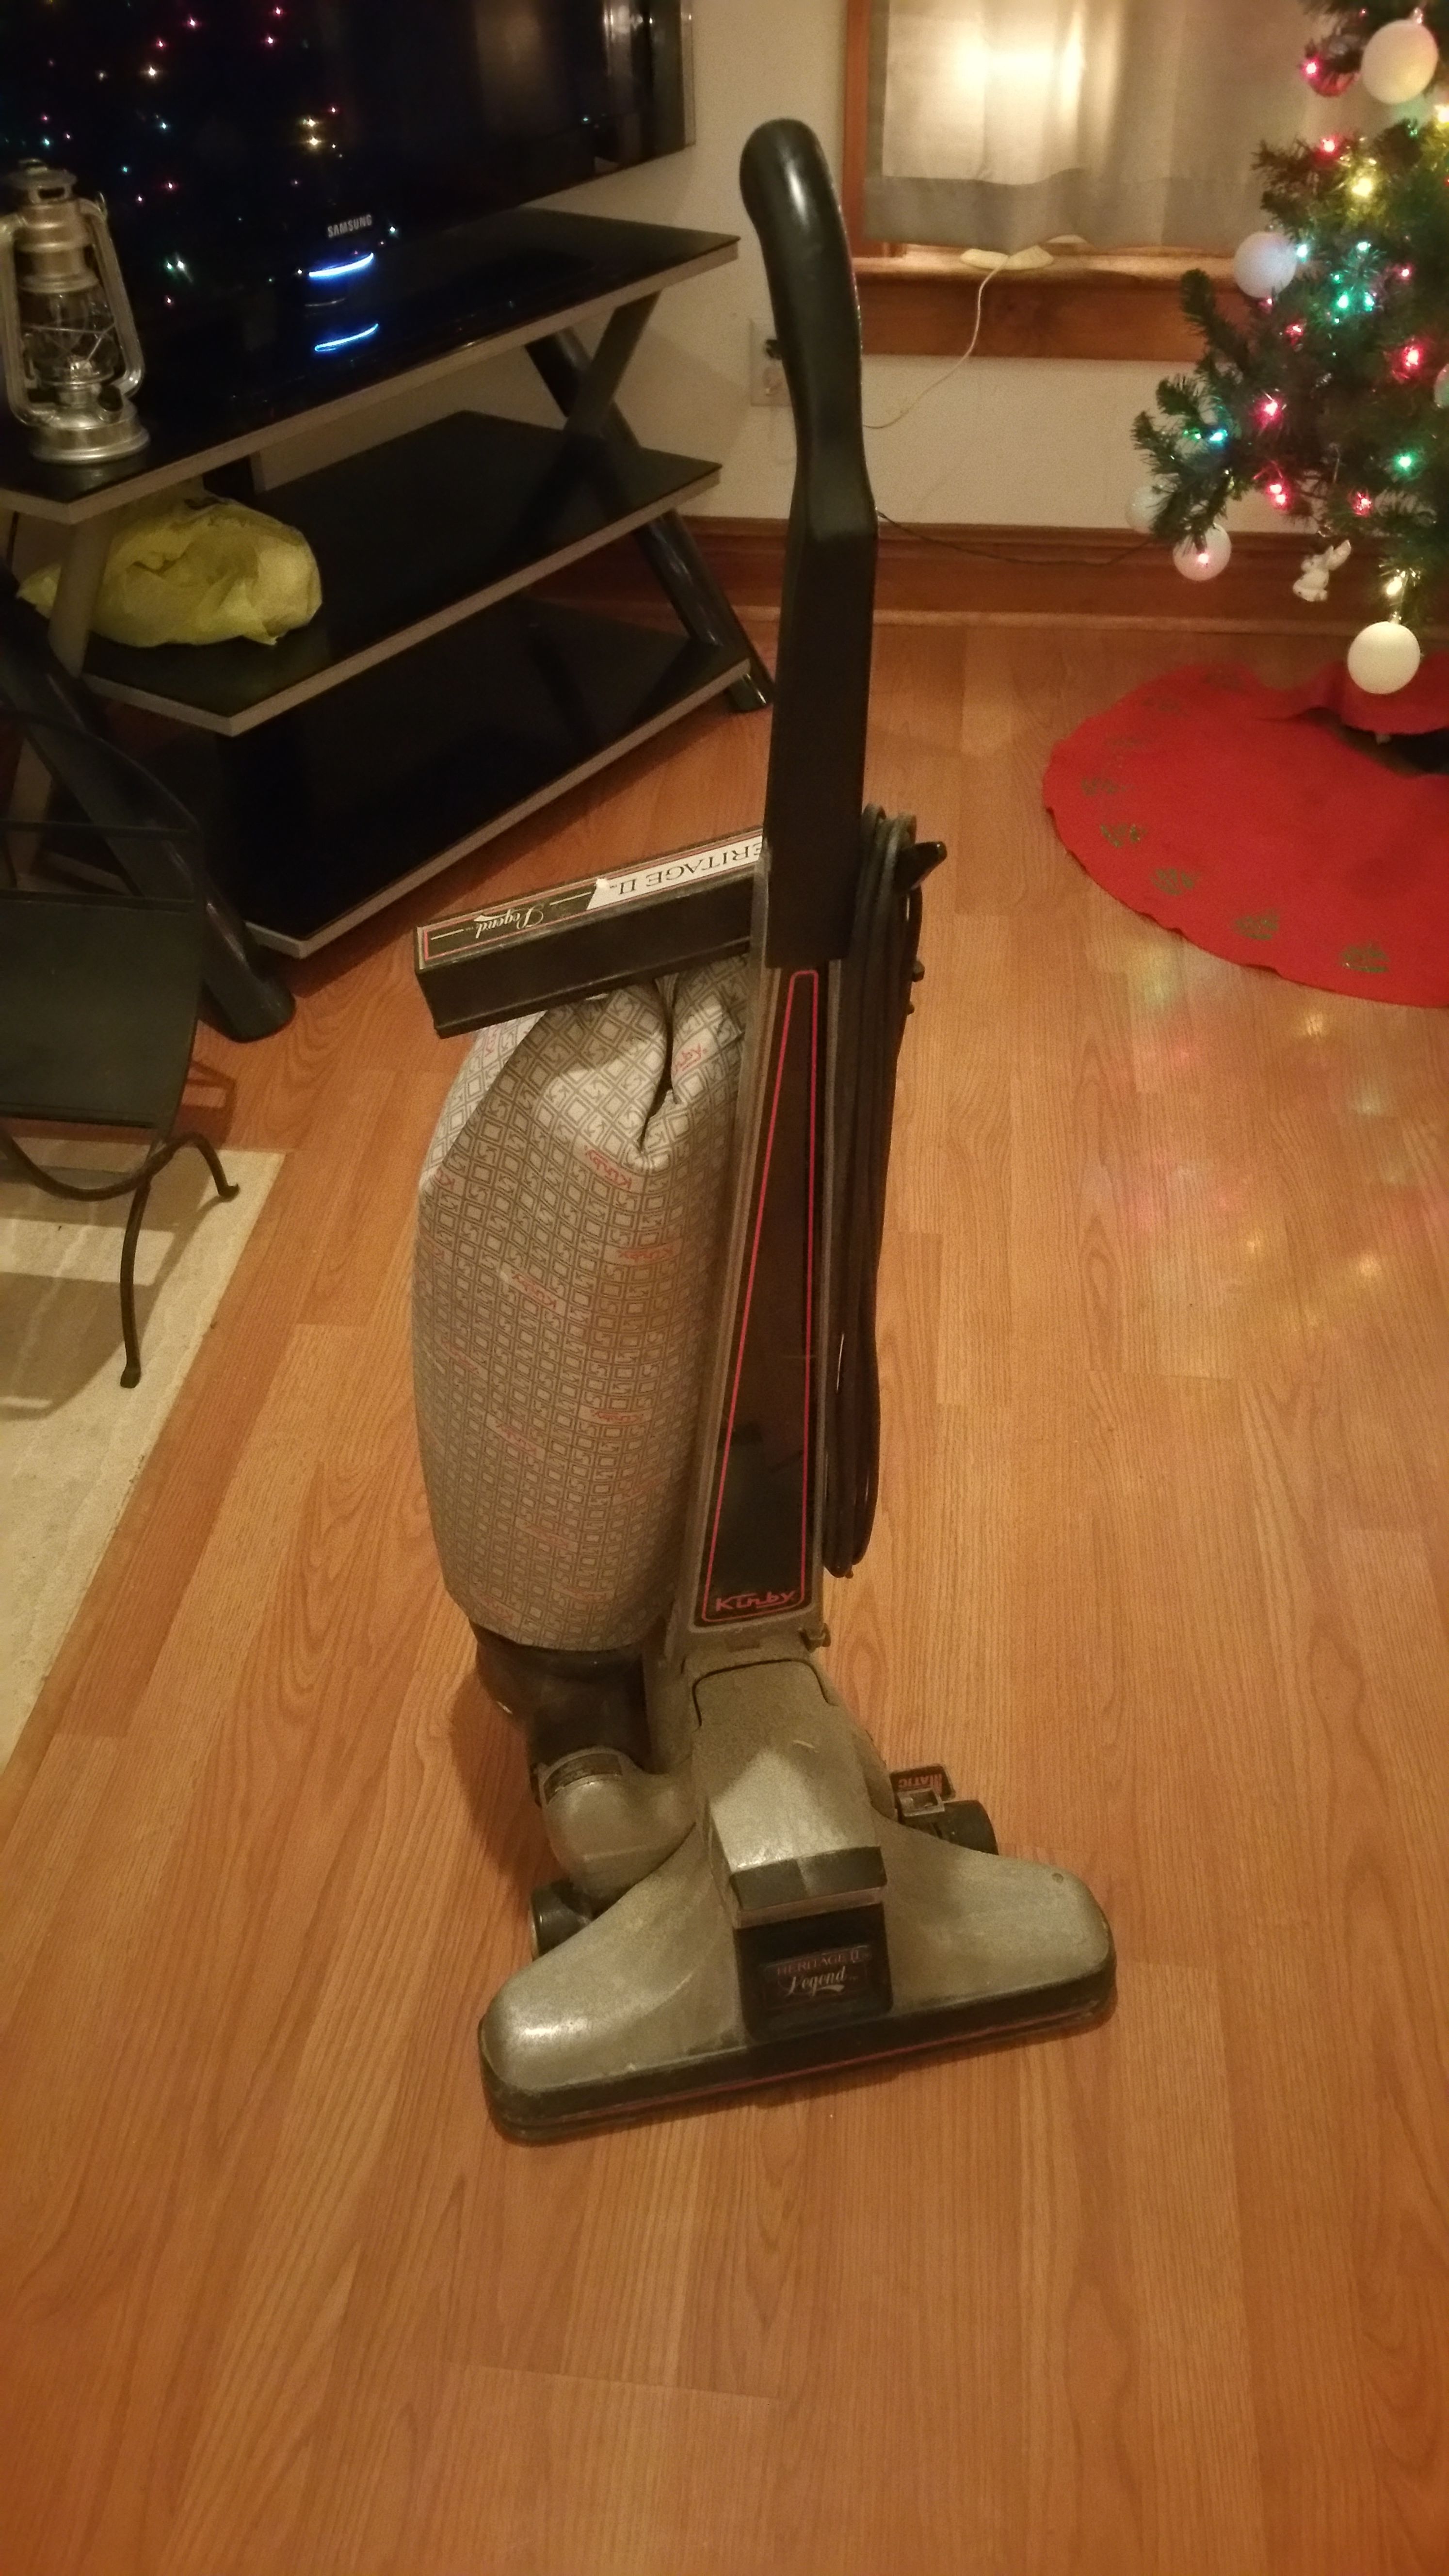 Kirby vacuum cleaner